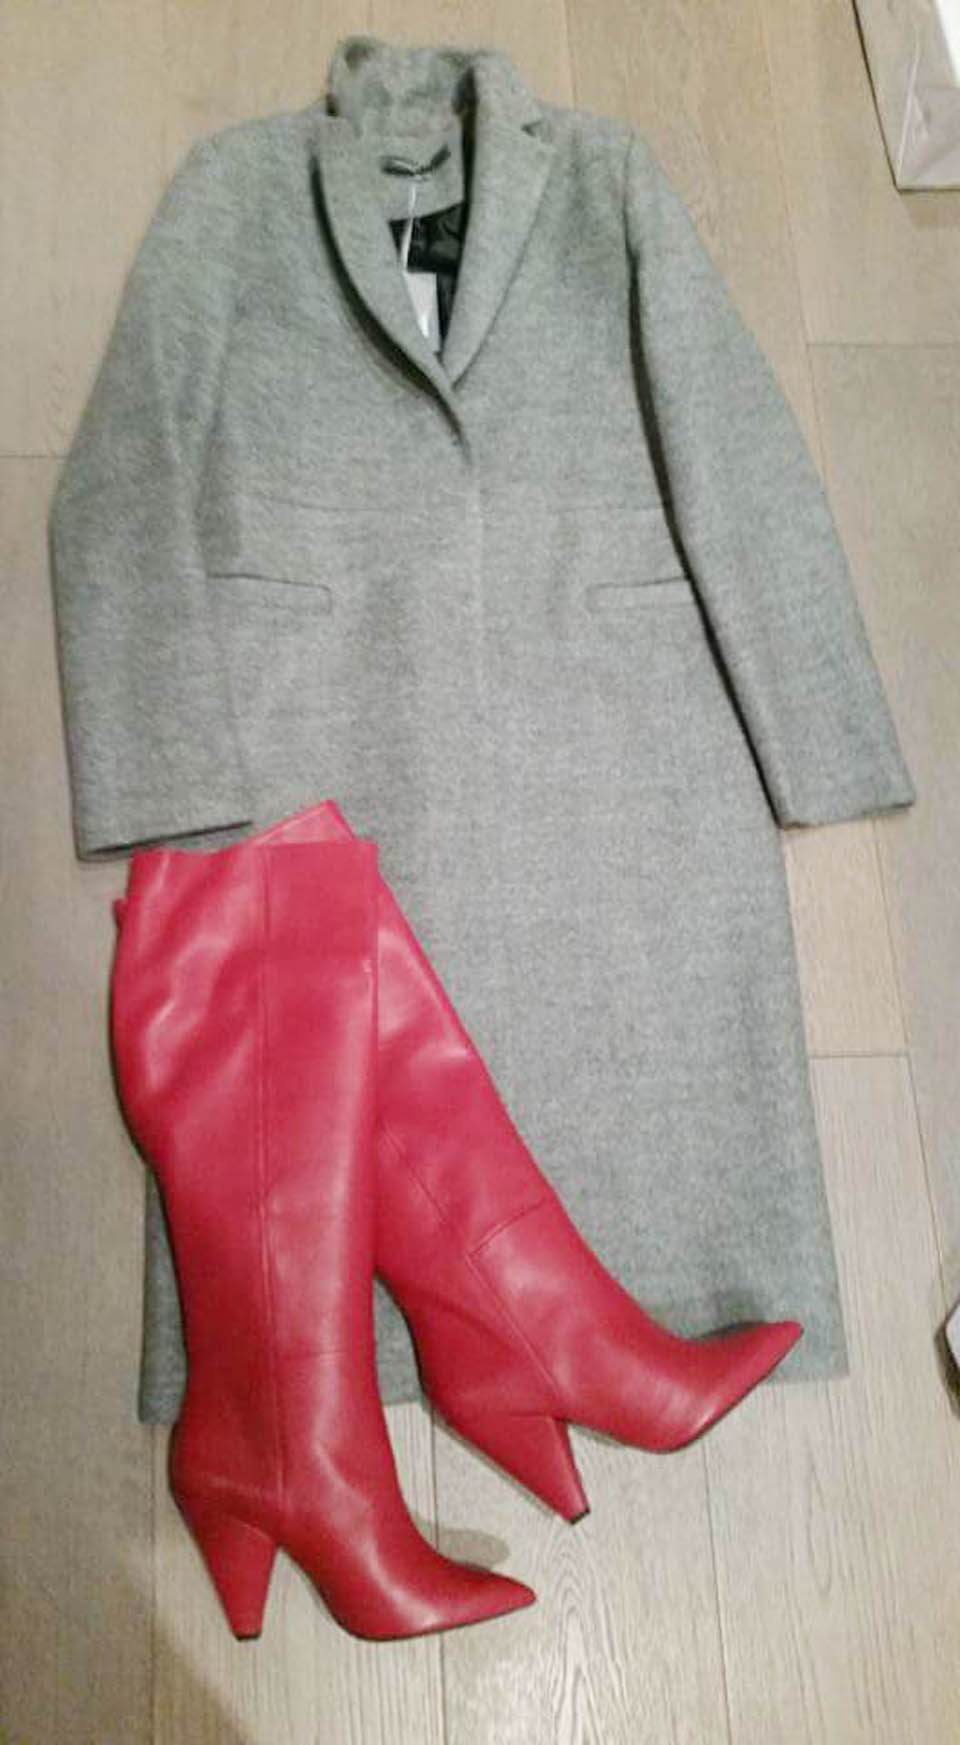 Красные кожаные сапоги Contigo. Цена: 127€. Серое шерстяное пальто Sandro Ferrone. Цена: 119€